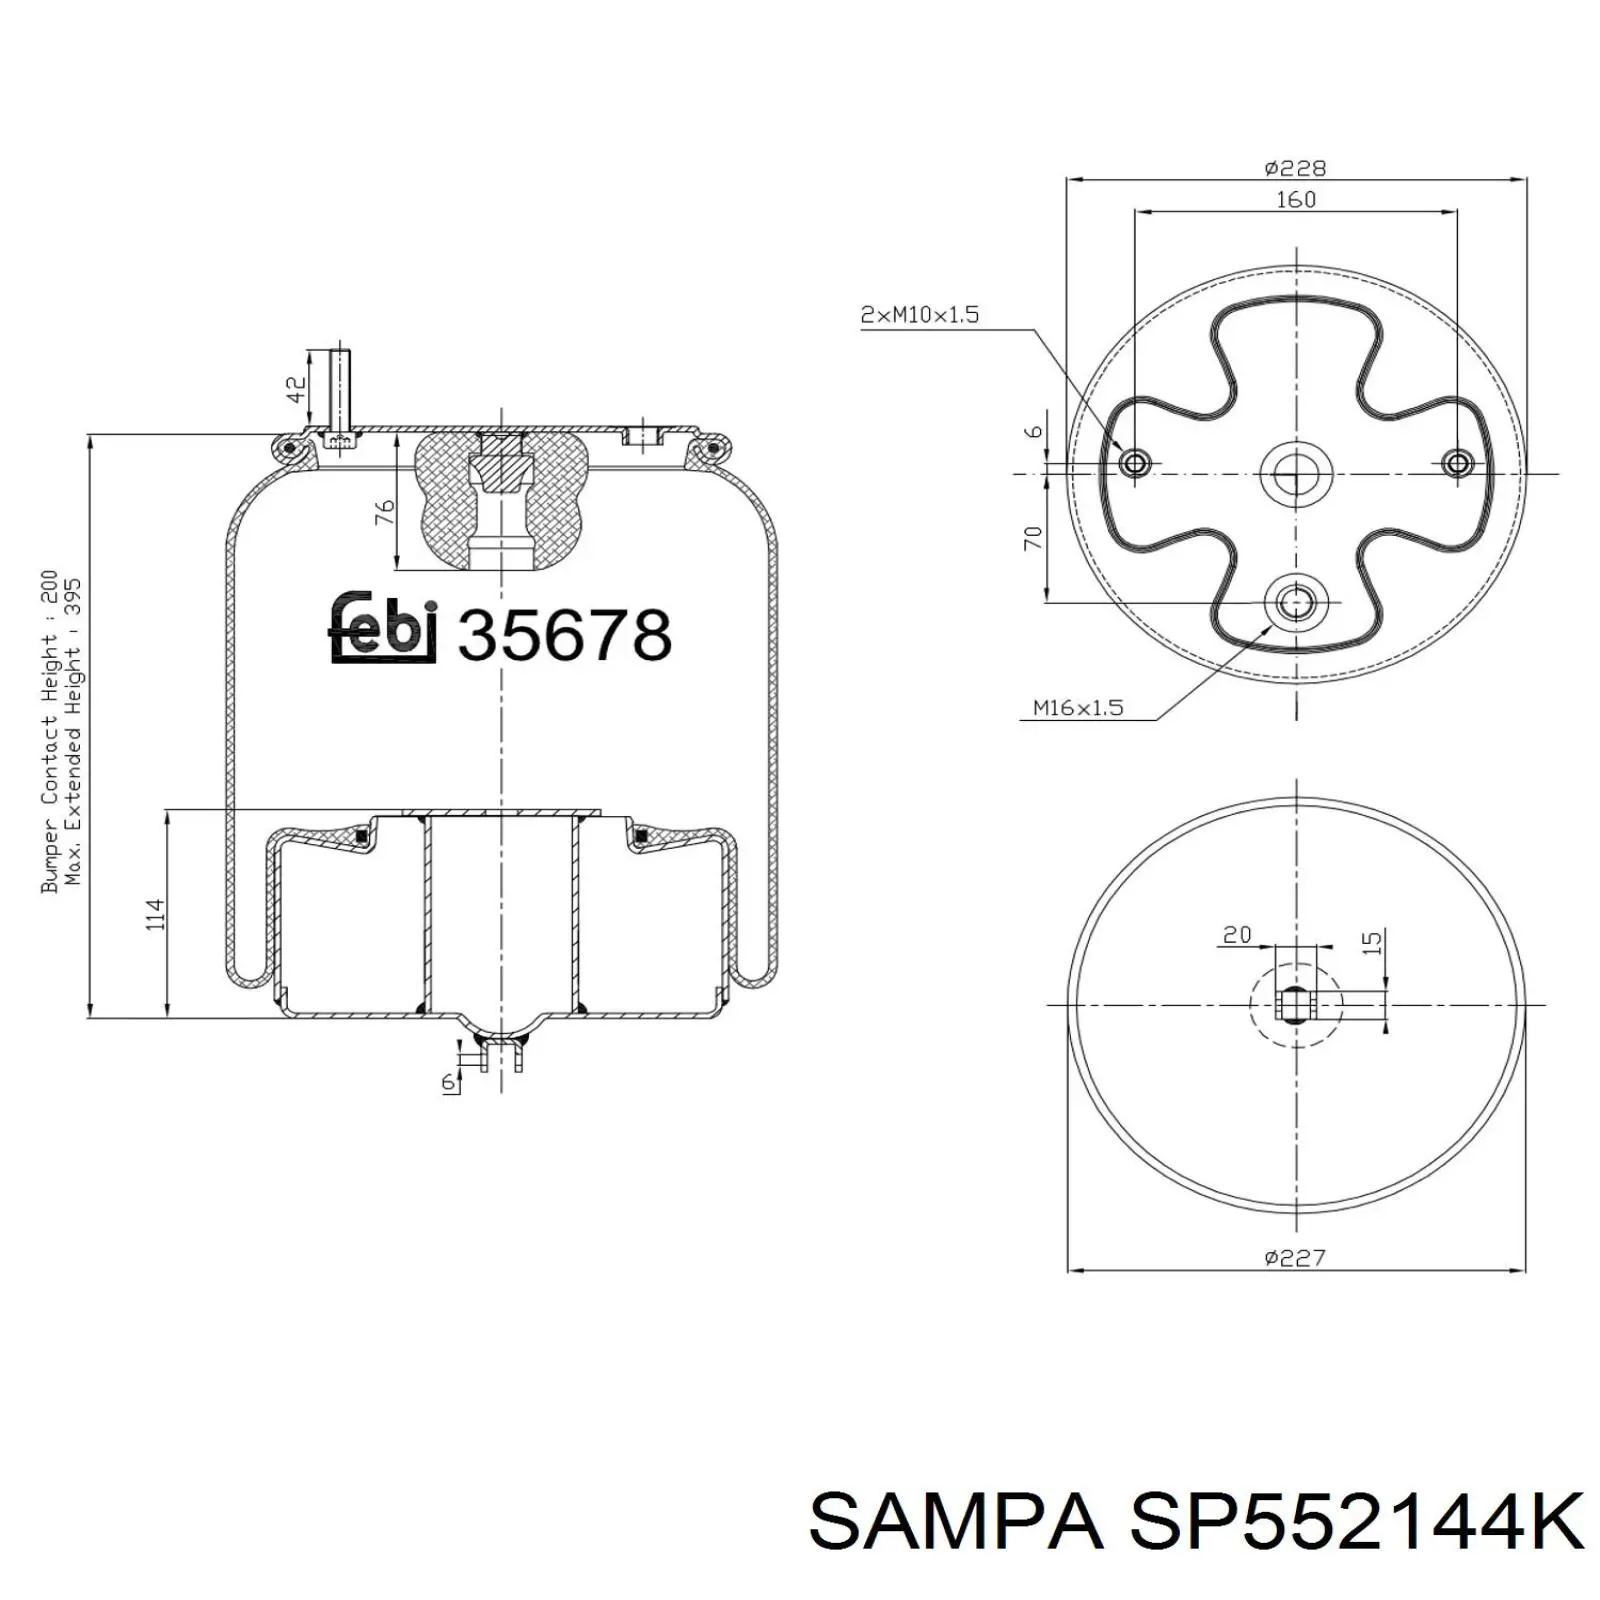 SP552144K Sampa Otomotiv‏ coxim pneumático (suspensão de lâminas pneumática do eixo dianteiro)